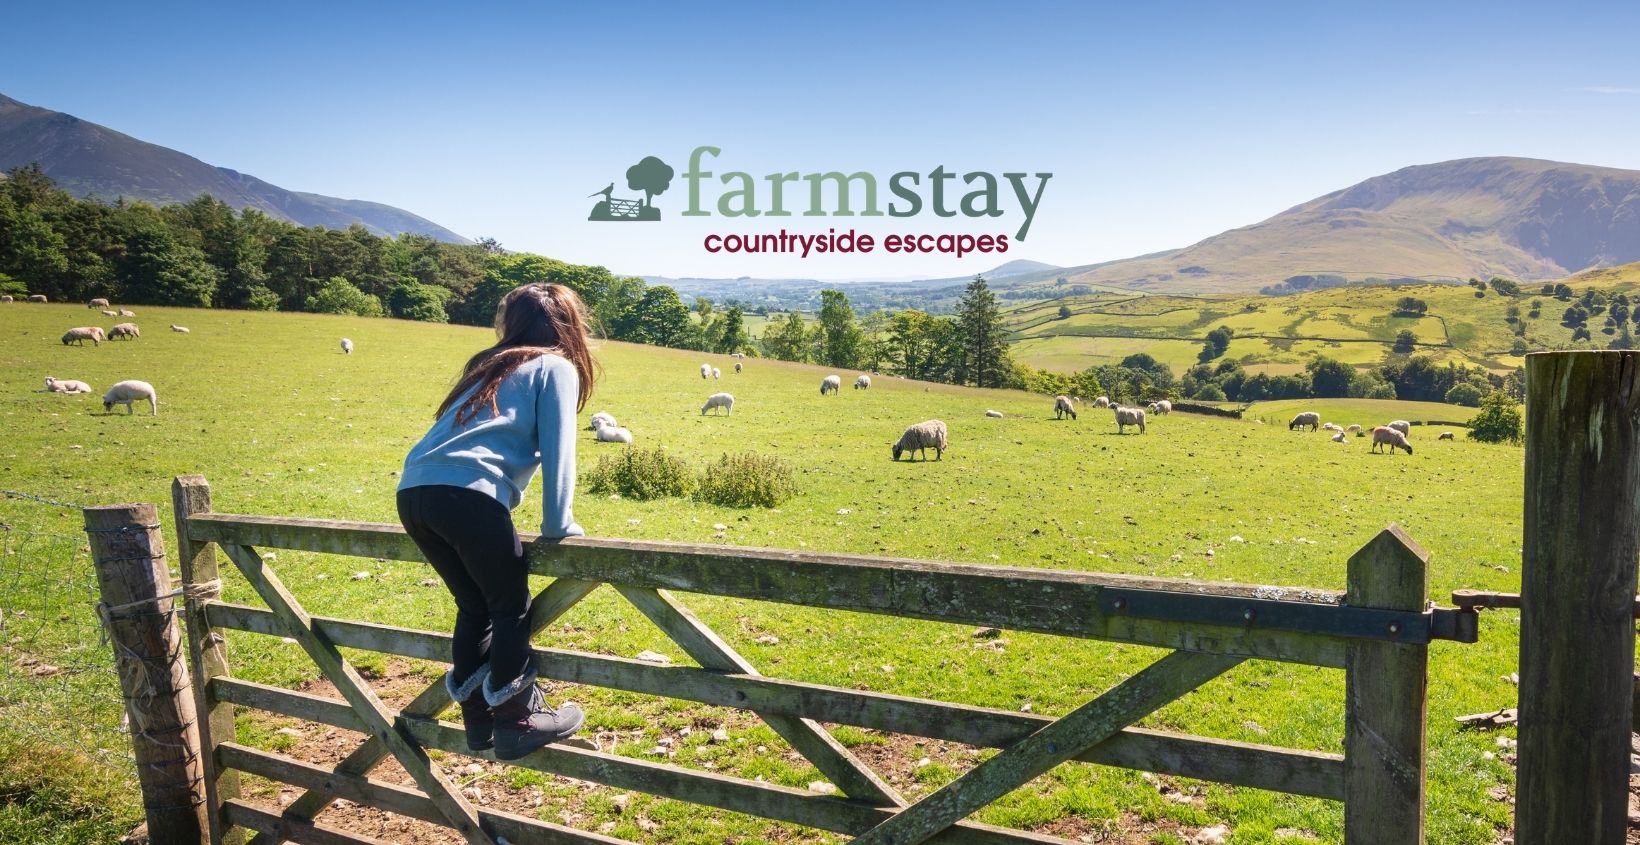 (c) Farmstay.co.uk